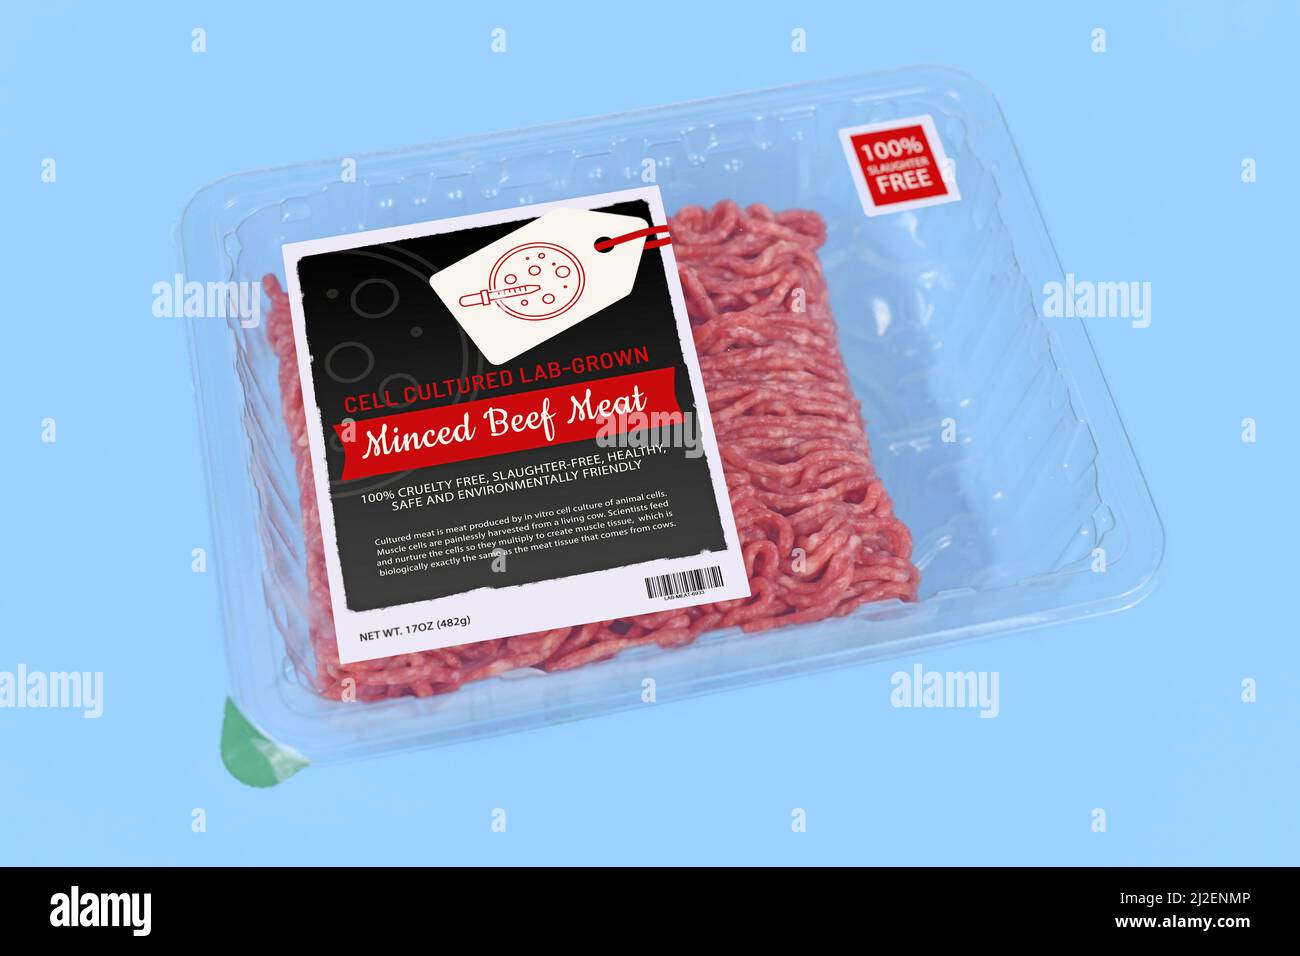 Concetto di carne coltivata a cellule in laboratorio per la produzione artificiale in vitro con carne macinata cruda confezionata con labe confezionata Foto Stock